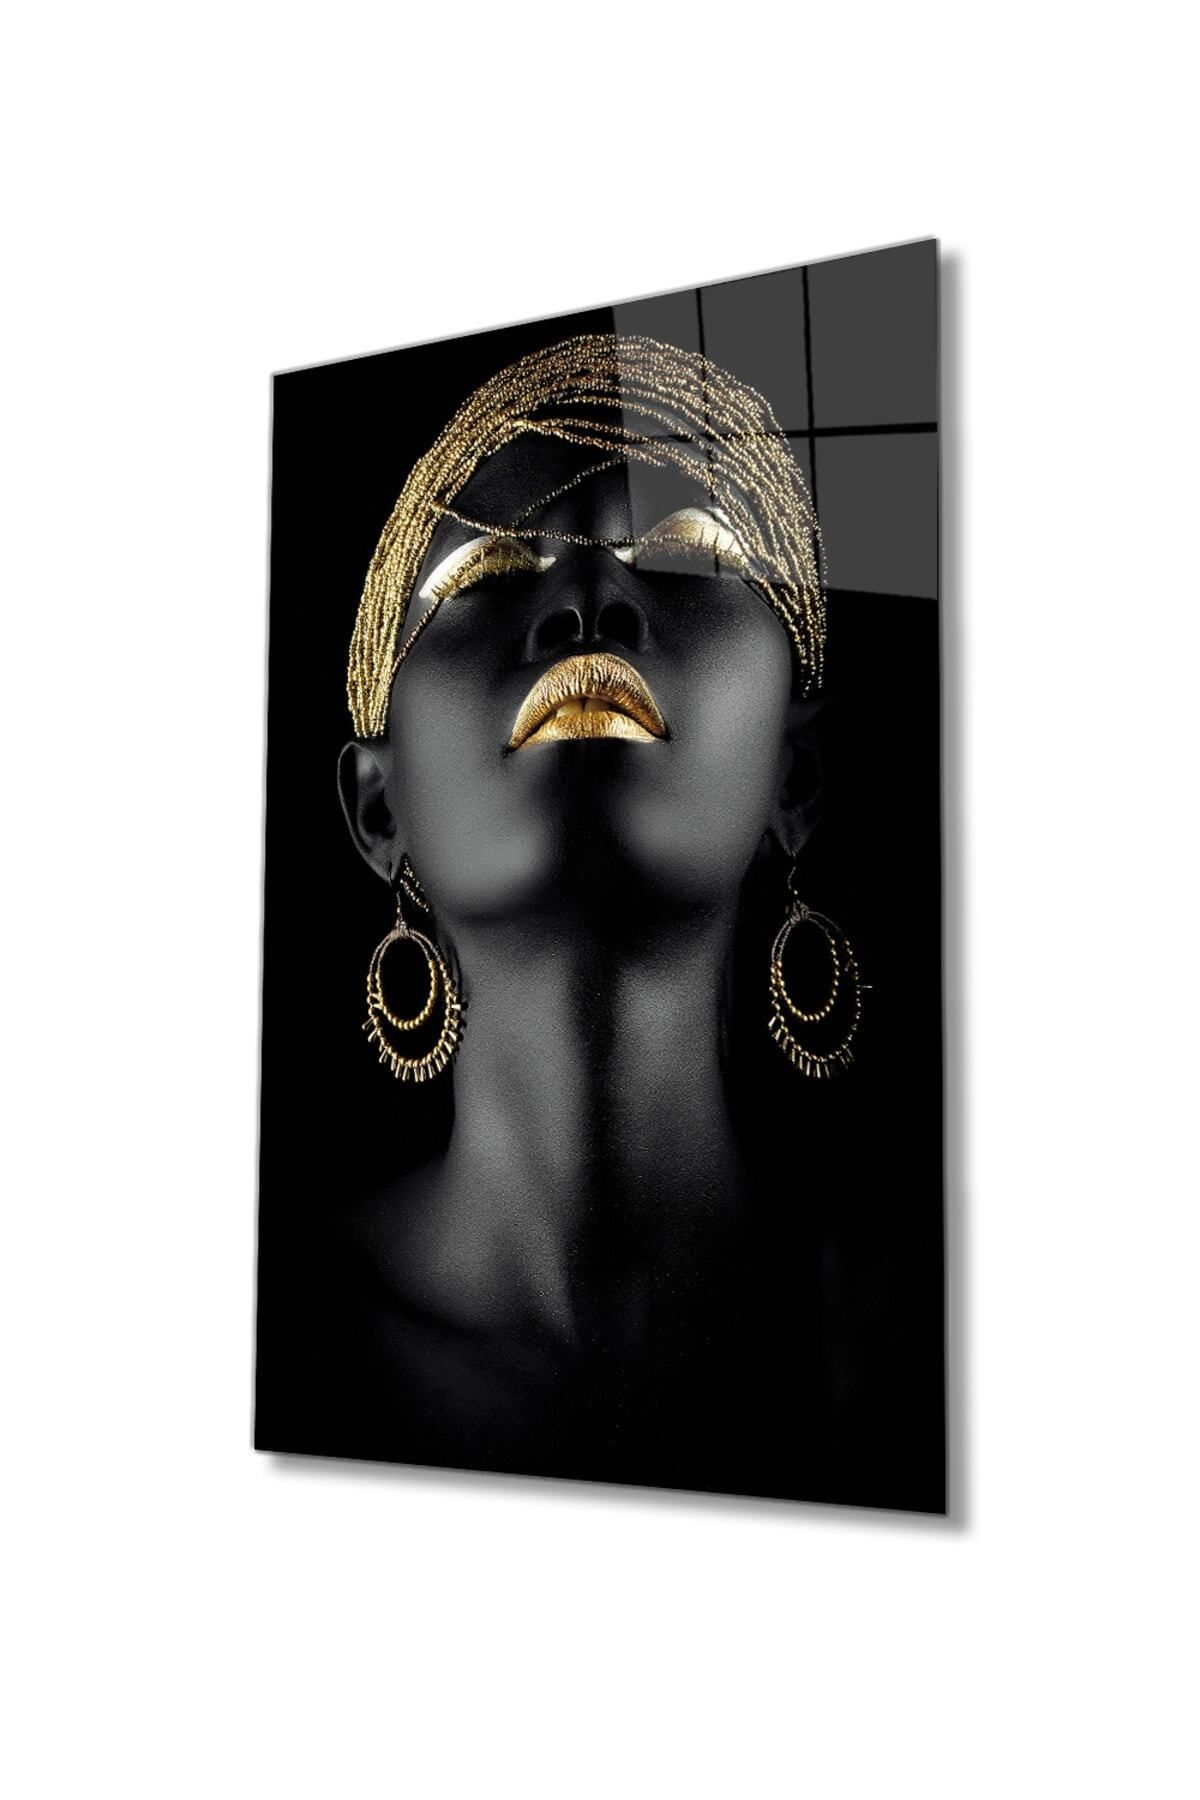 foradels frdls cam01 Altın Saç Dudak ve Göz Makyajlı Afrikalı Kadın Cam Tablo, Duvar Dekoru Hediyelik